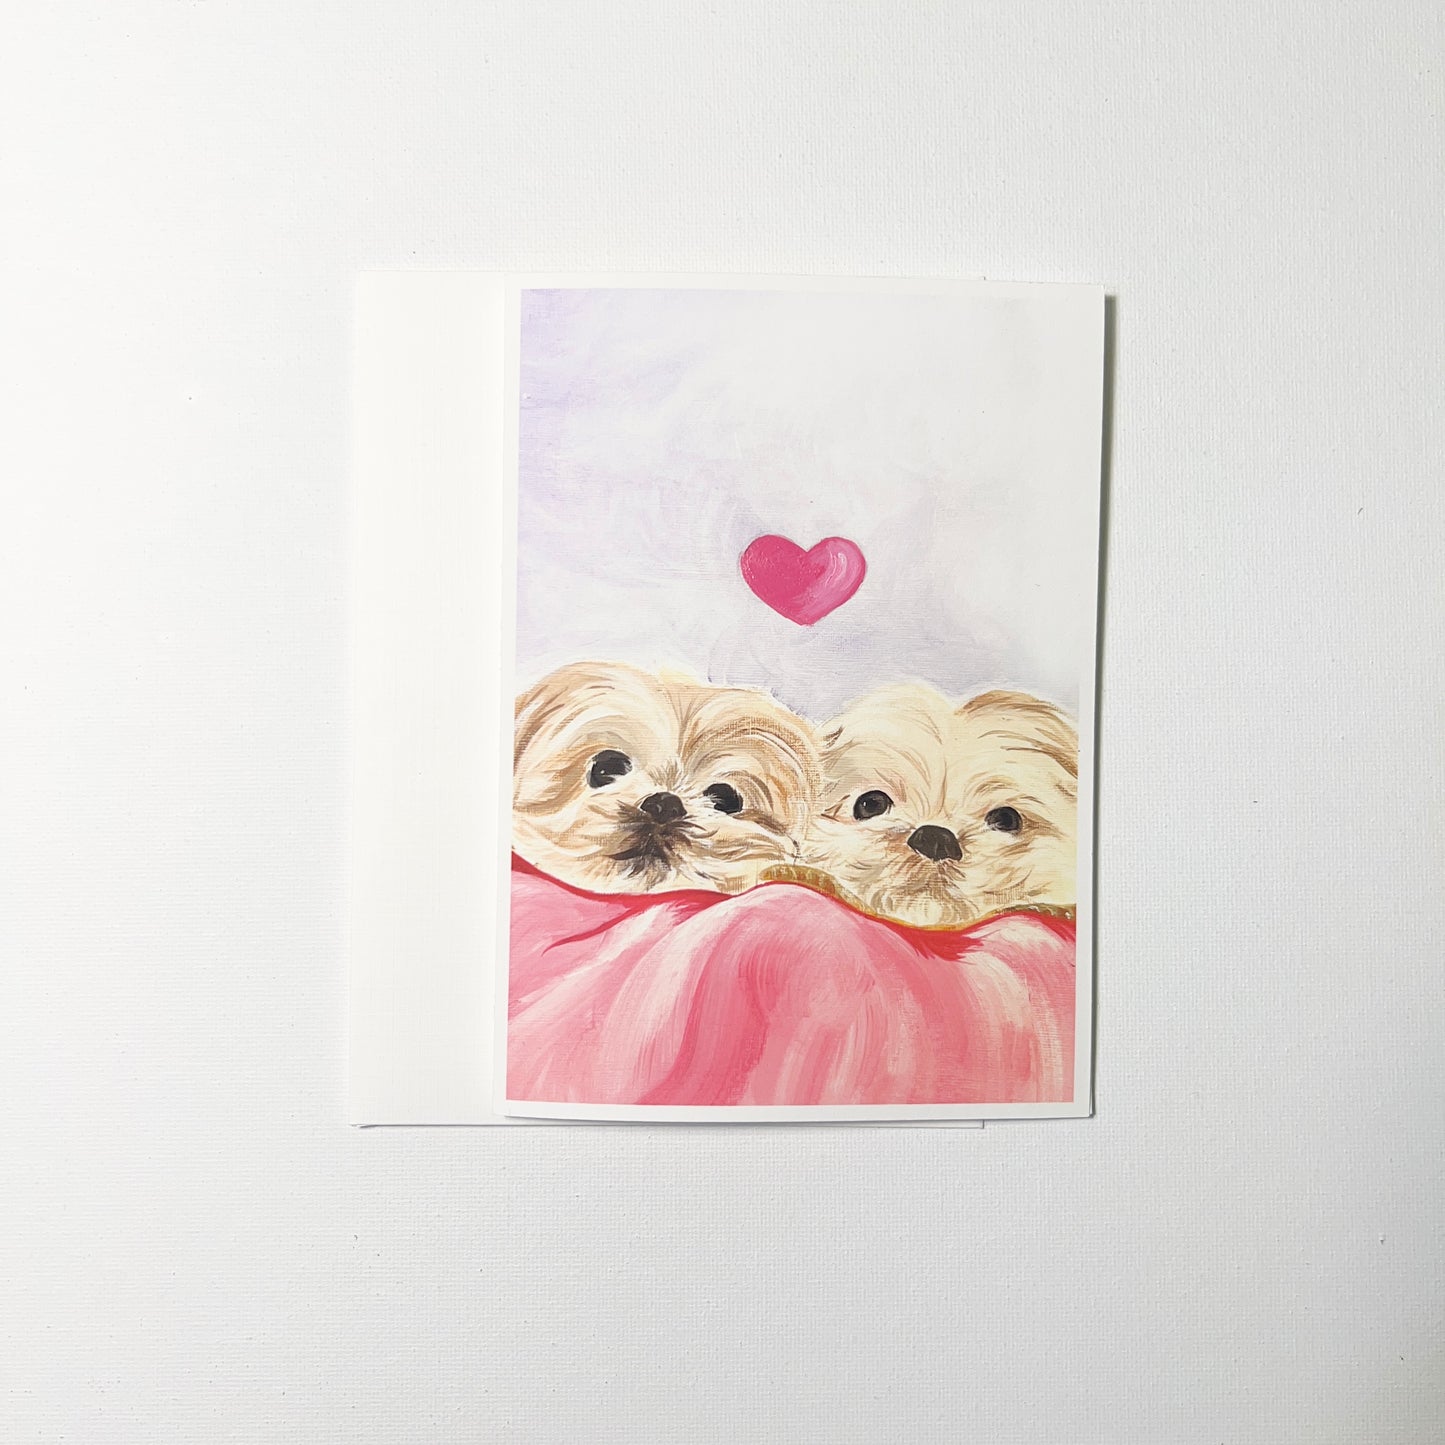 Puppy Love Card